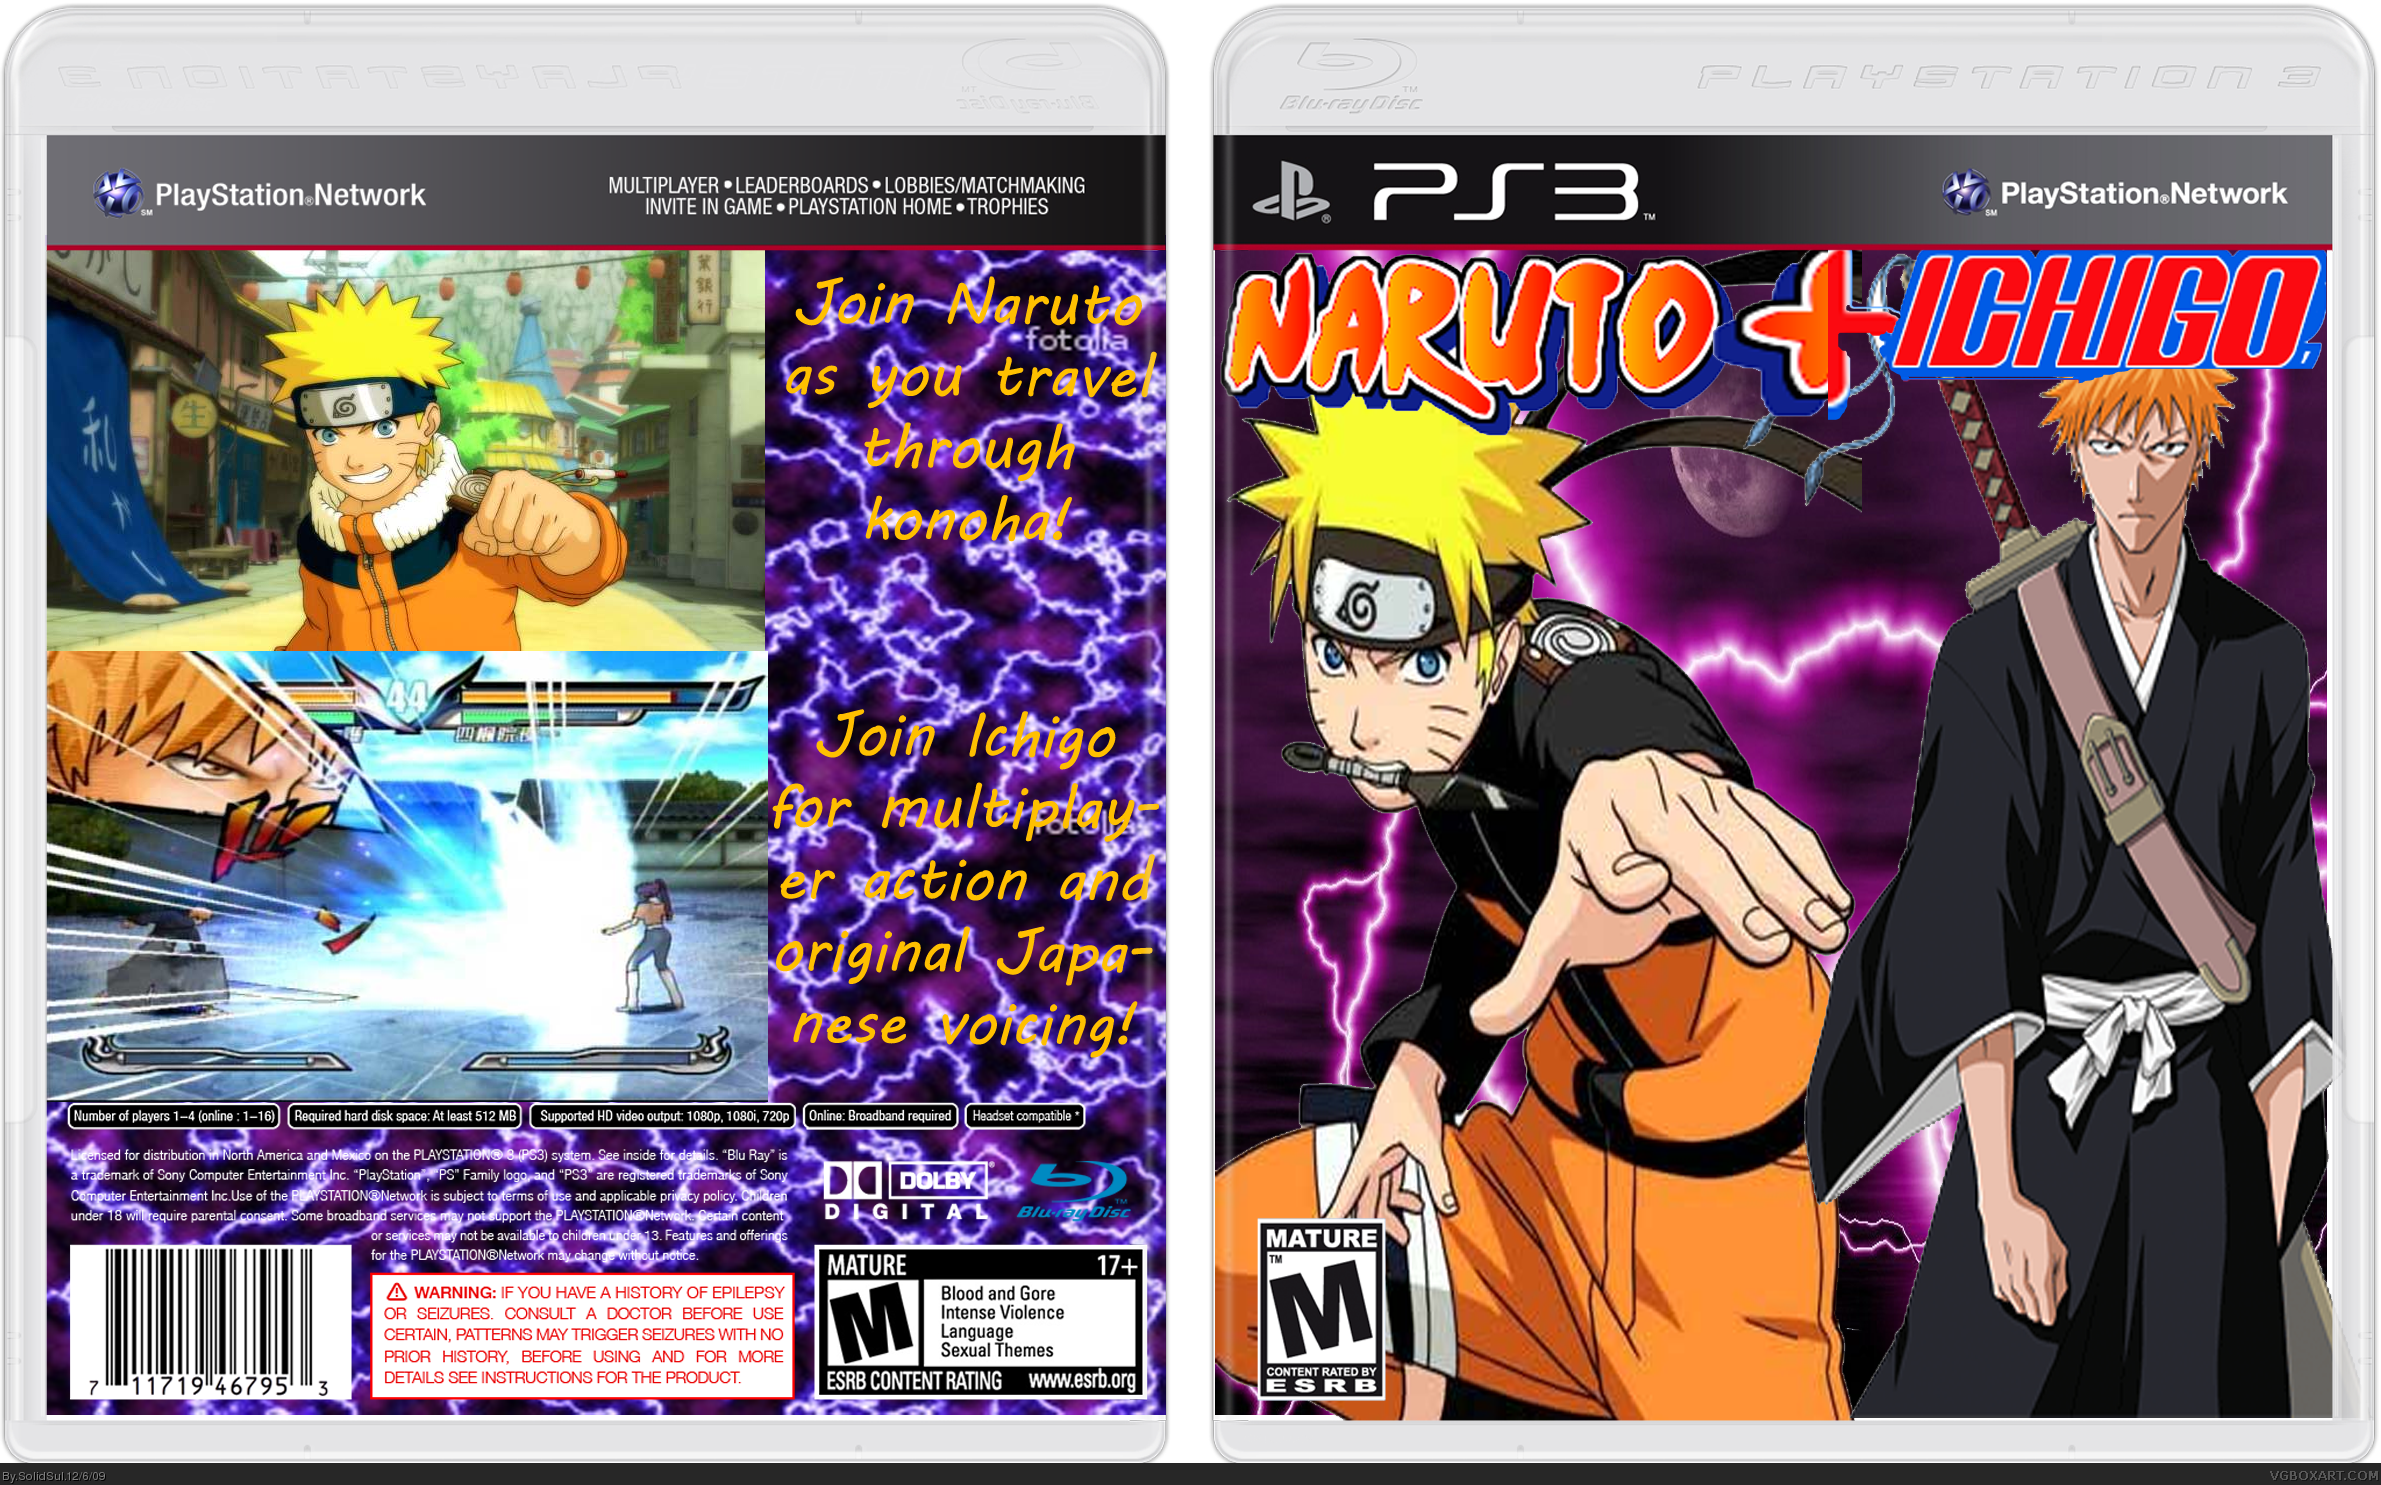 Naruto & Ichigo box cover